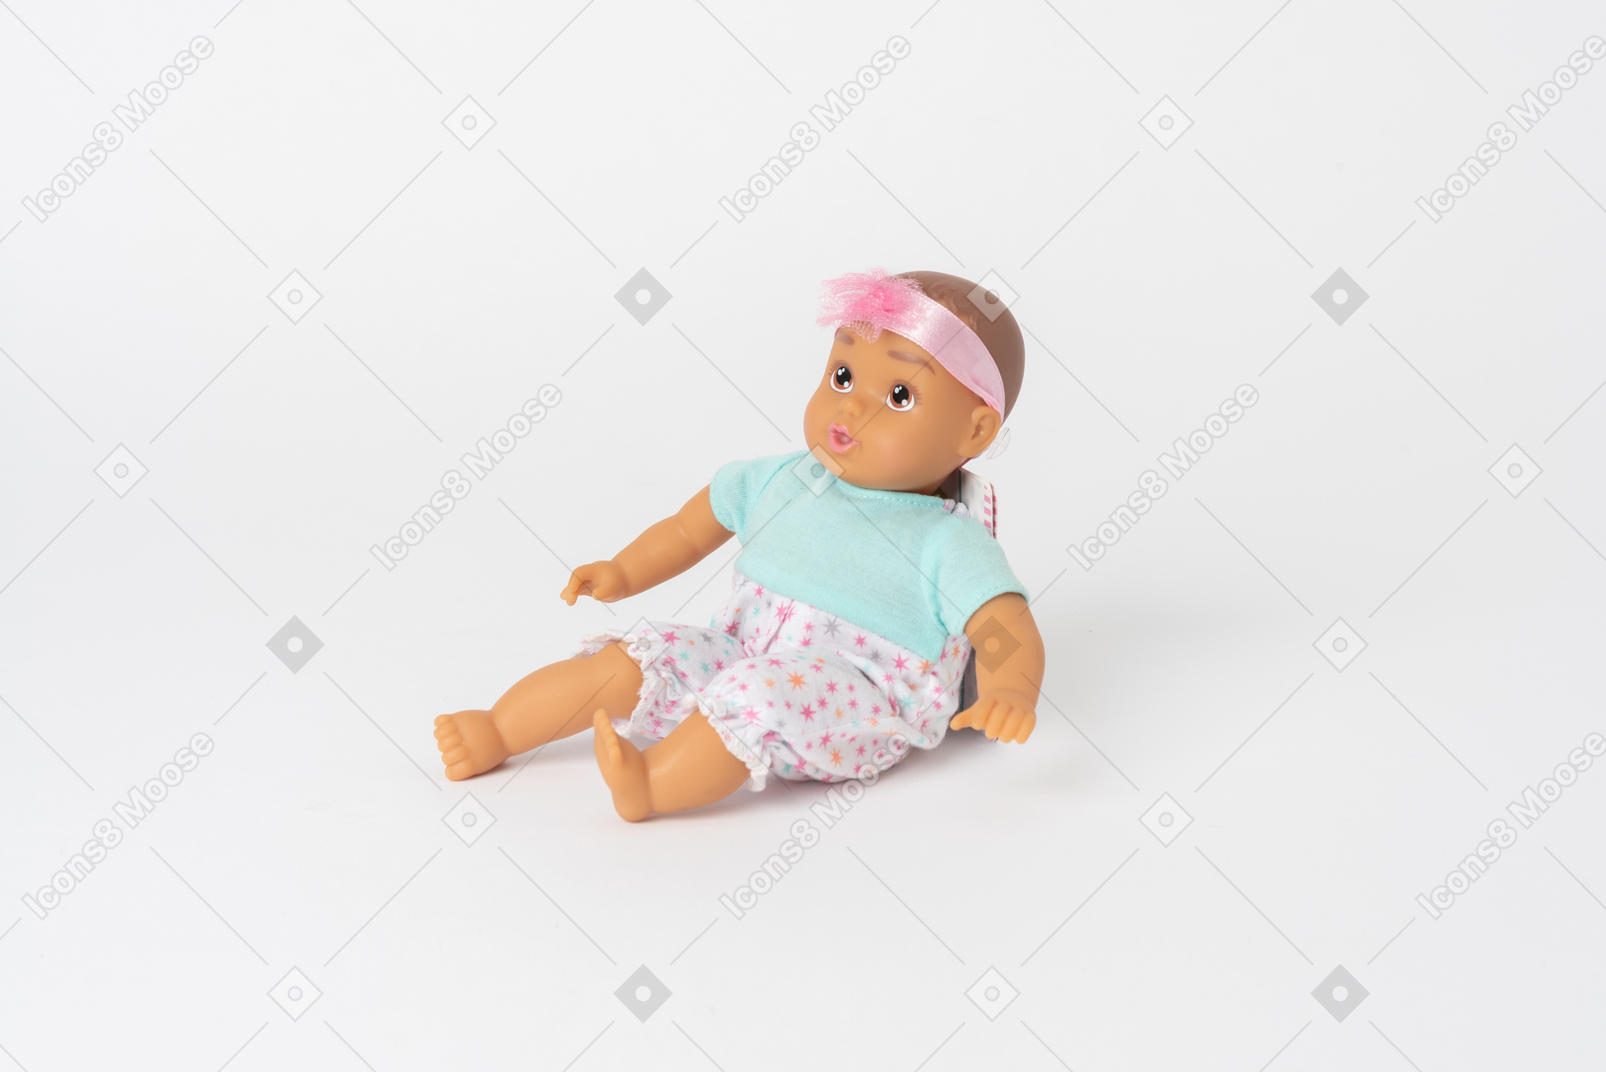 Cute baby doll seduto isolato su uno sfondo bianco semplice